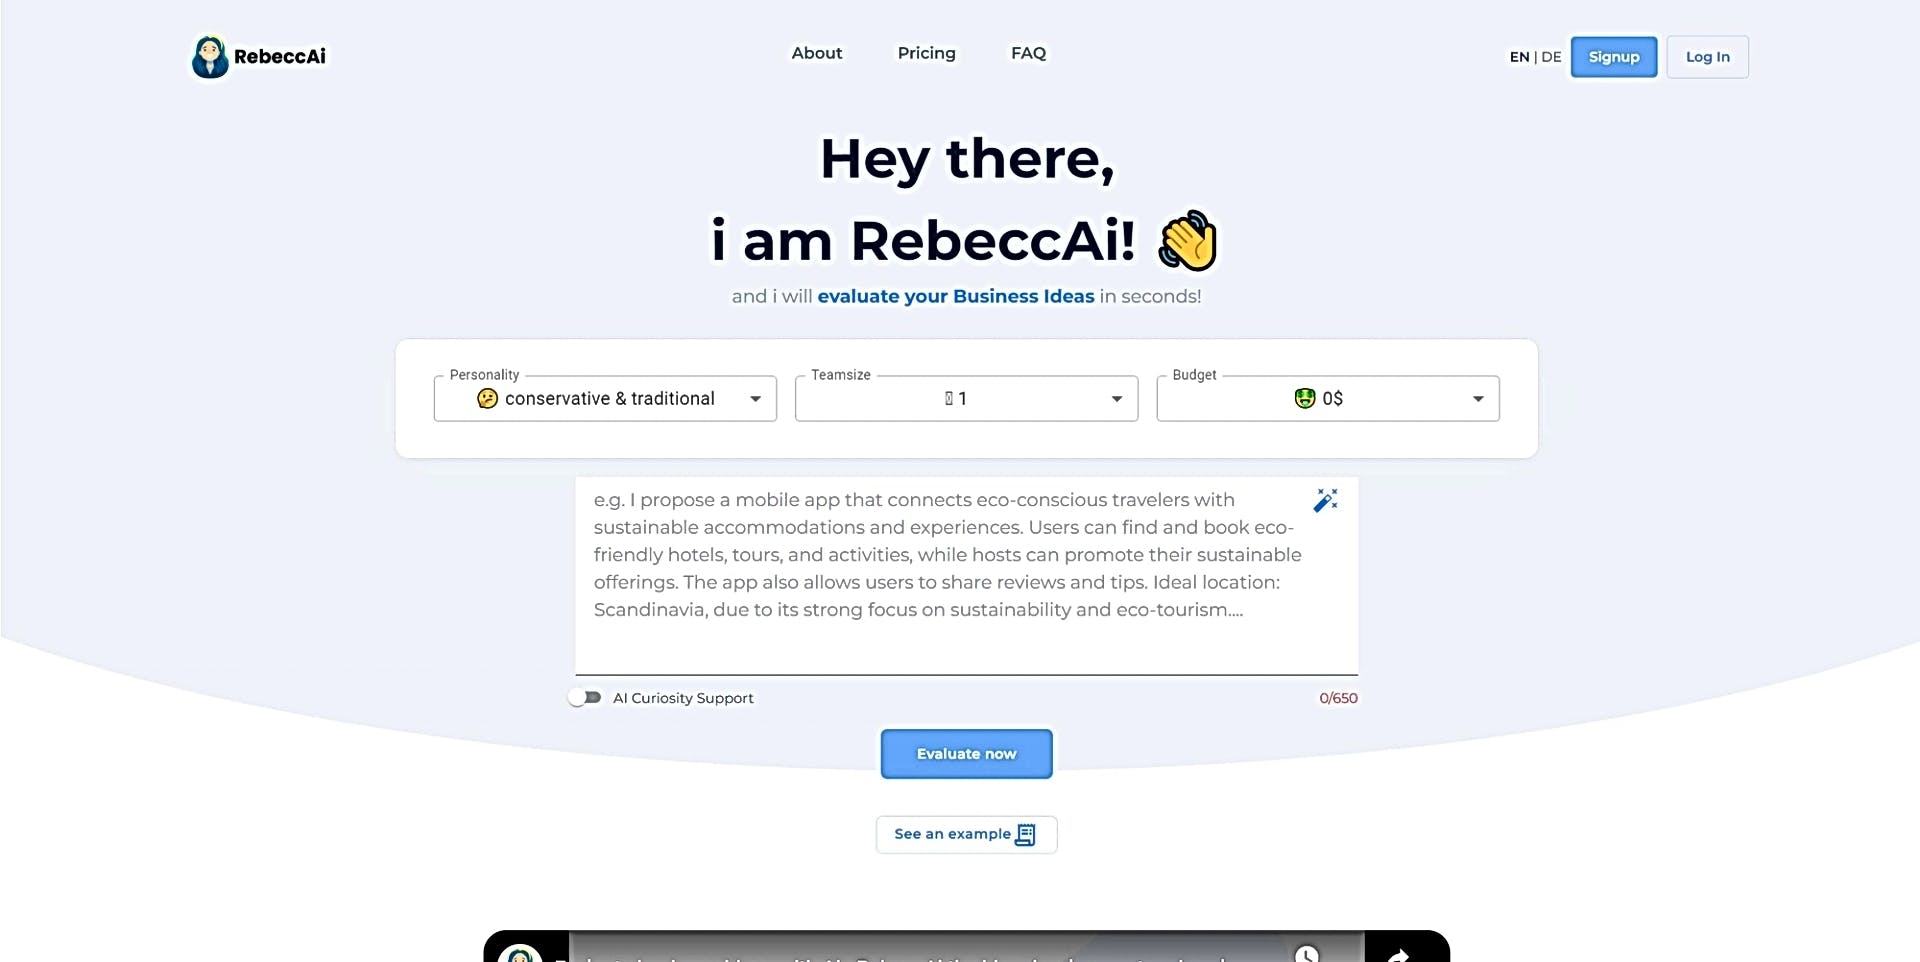 RebeccAI featured